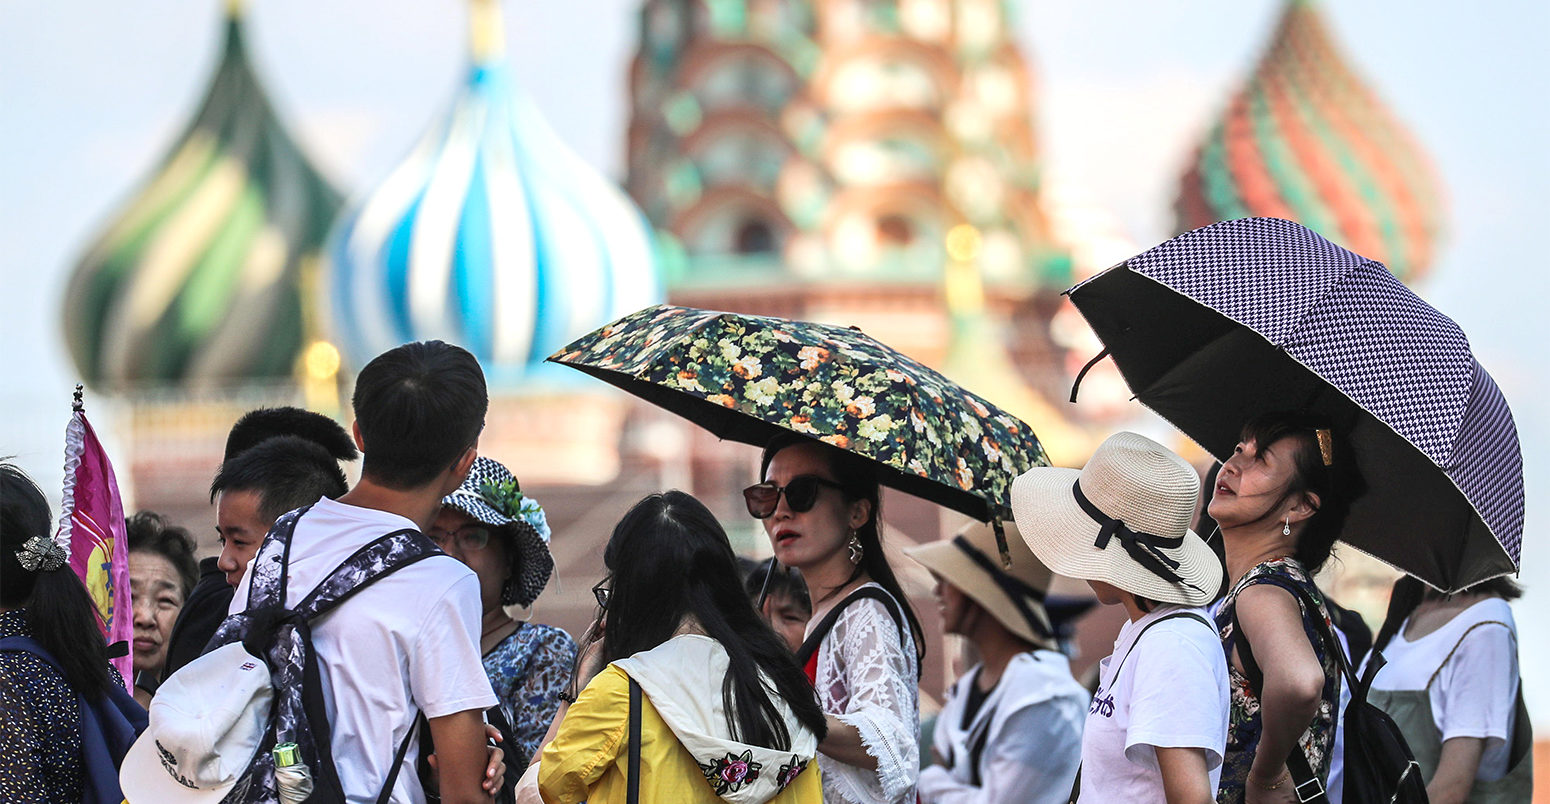 人们shelter under umbrellas during a heatwave in Moscow, 3 August 2018. Credit: ITAR-TASS News Agency / Alamy Stock Photo.